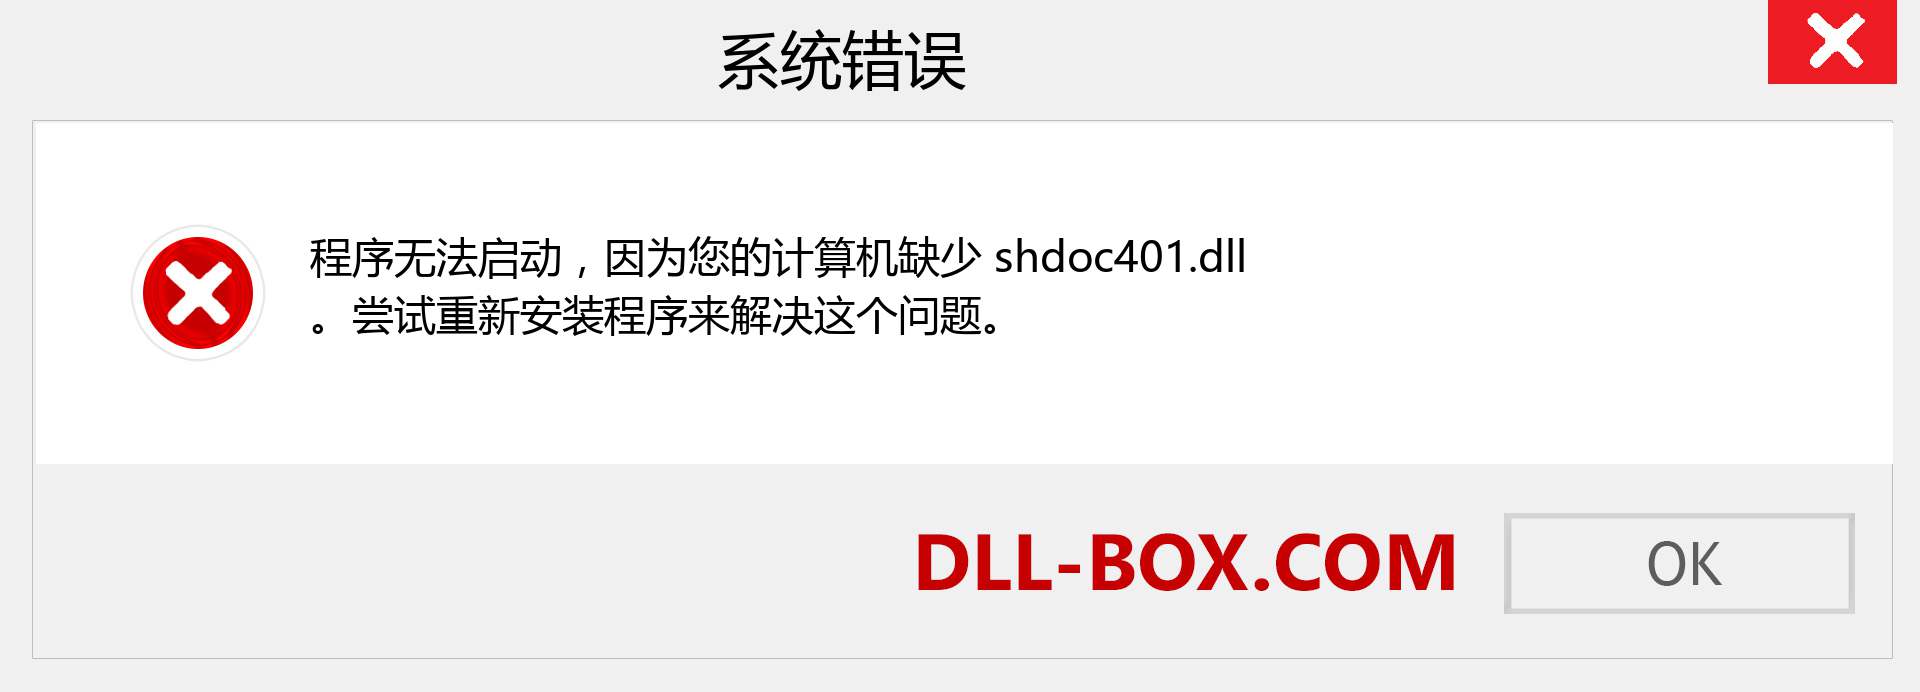 shdoc401.dll 文件丢失？。 适用于 Windows 7、8、10 的下载 - 修复 Windows、照片、图像上的 shdoc401 dll 丢失错误